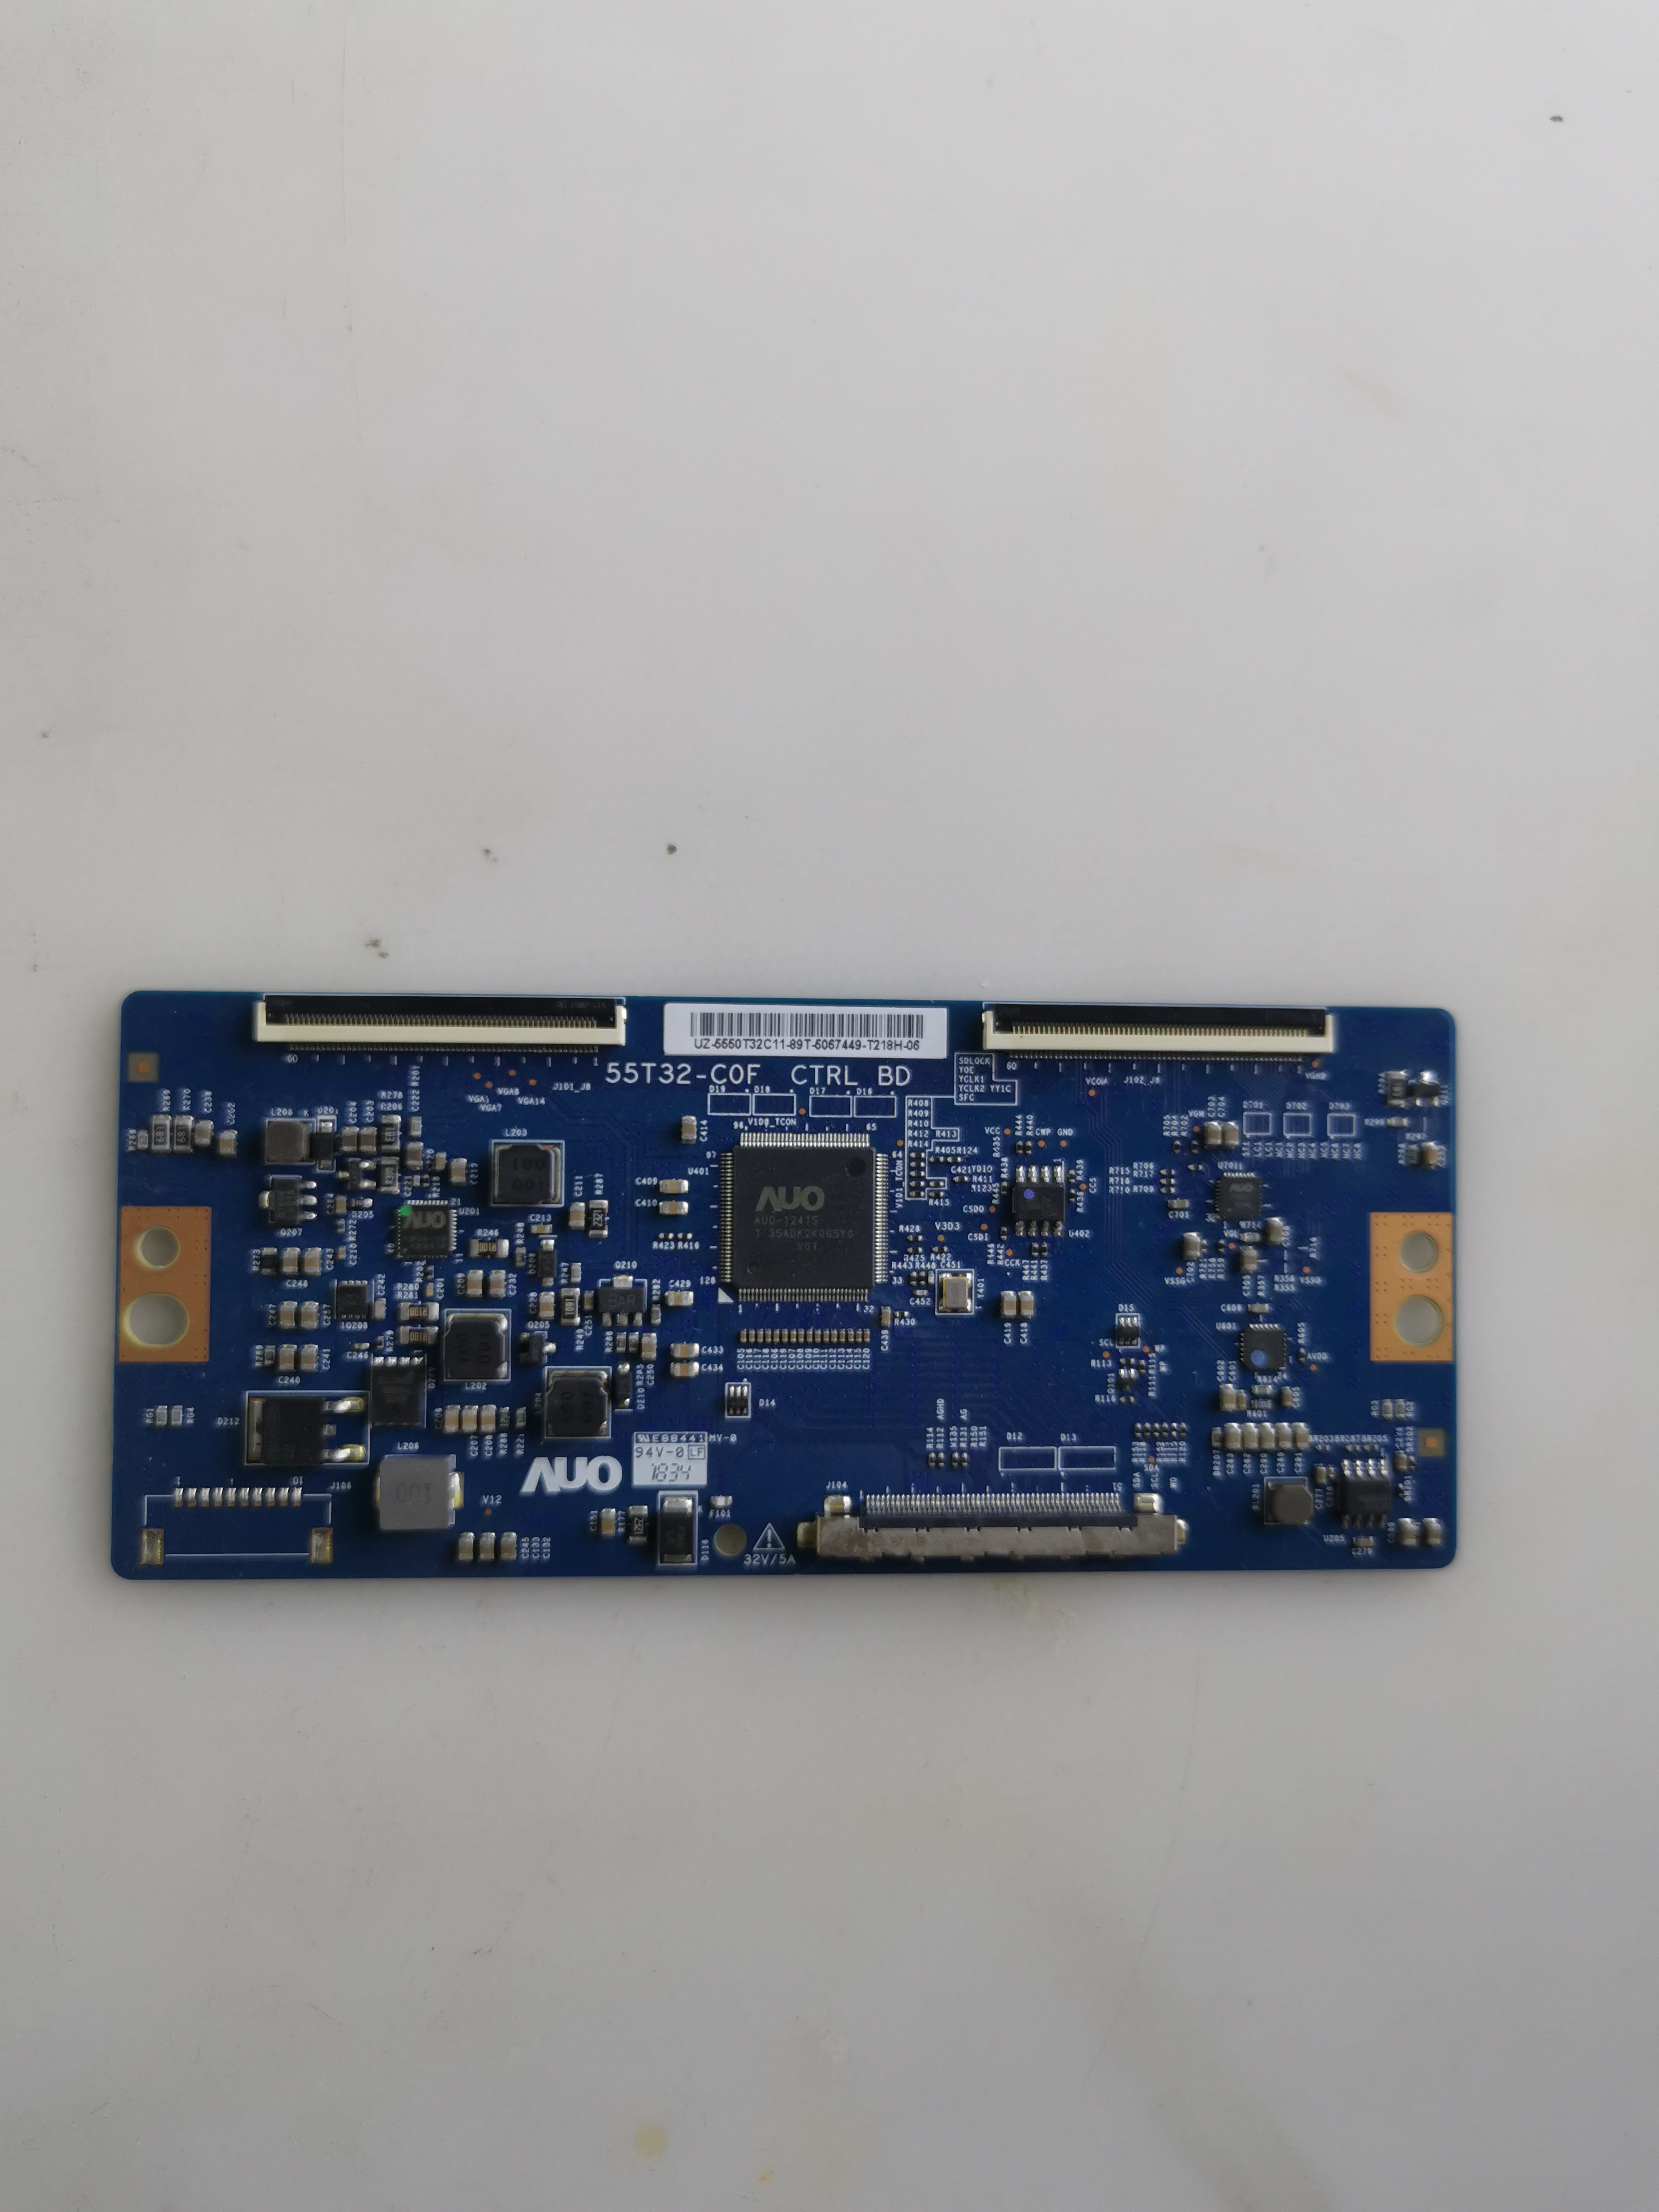 海信LED50N3600U液晶电视逻辑板55T32-C0F/M CTRL BD